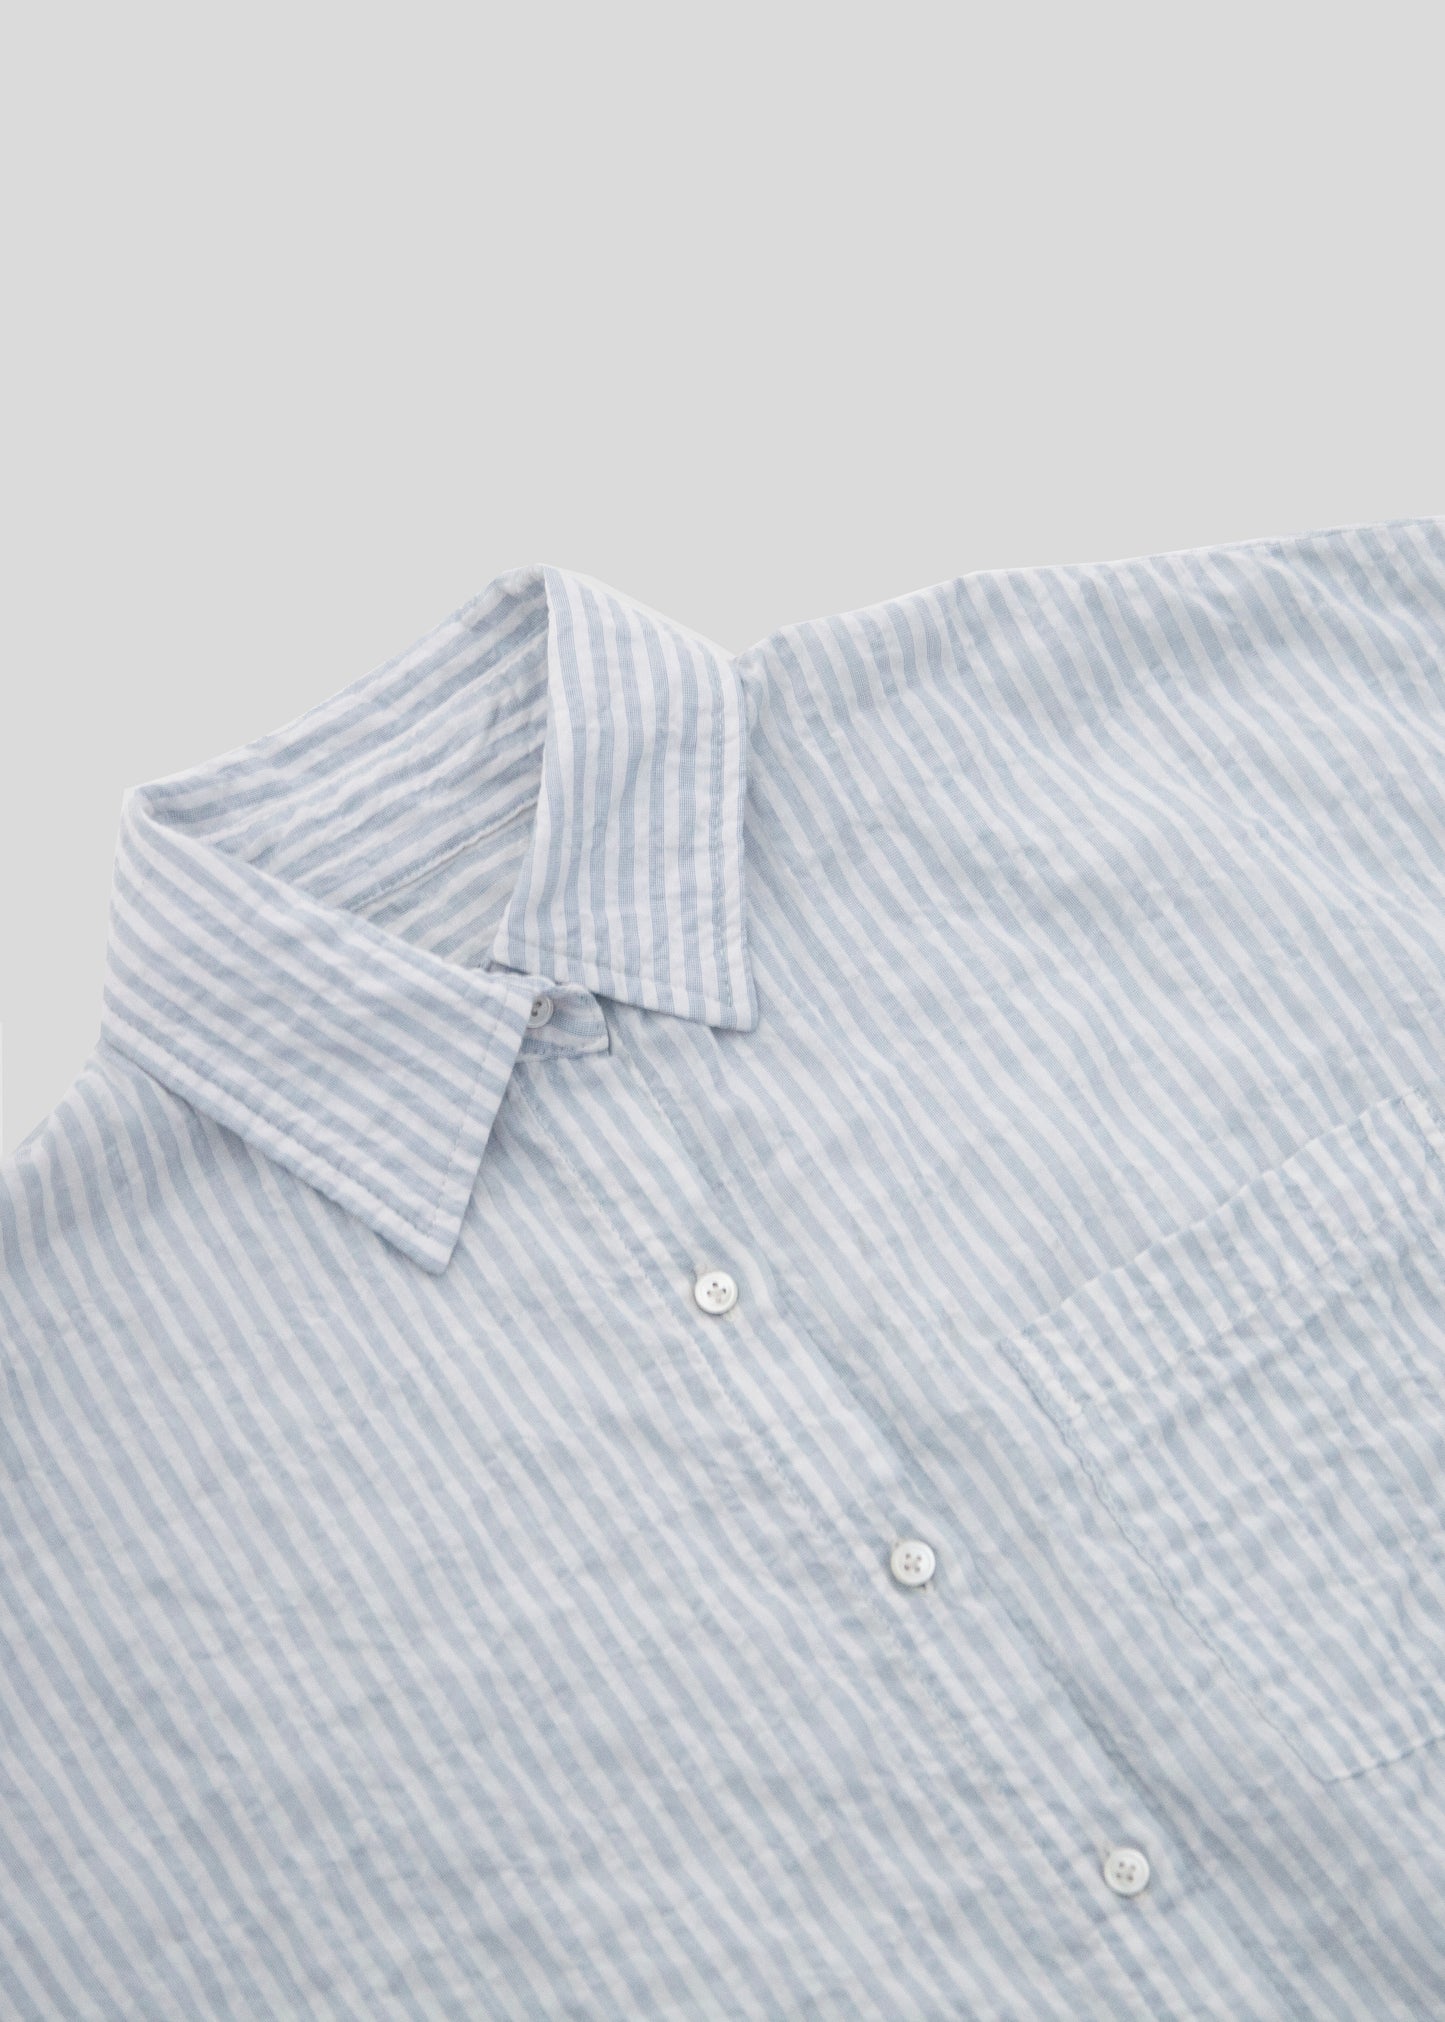 The Huntington Shirt, Light Blue Stripe – Steven Alan